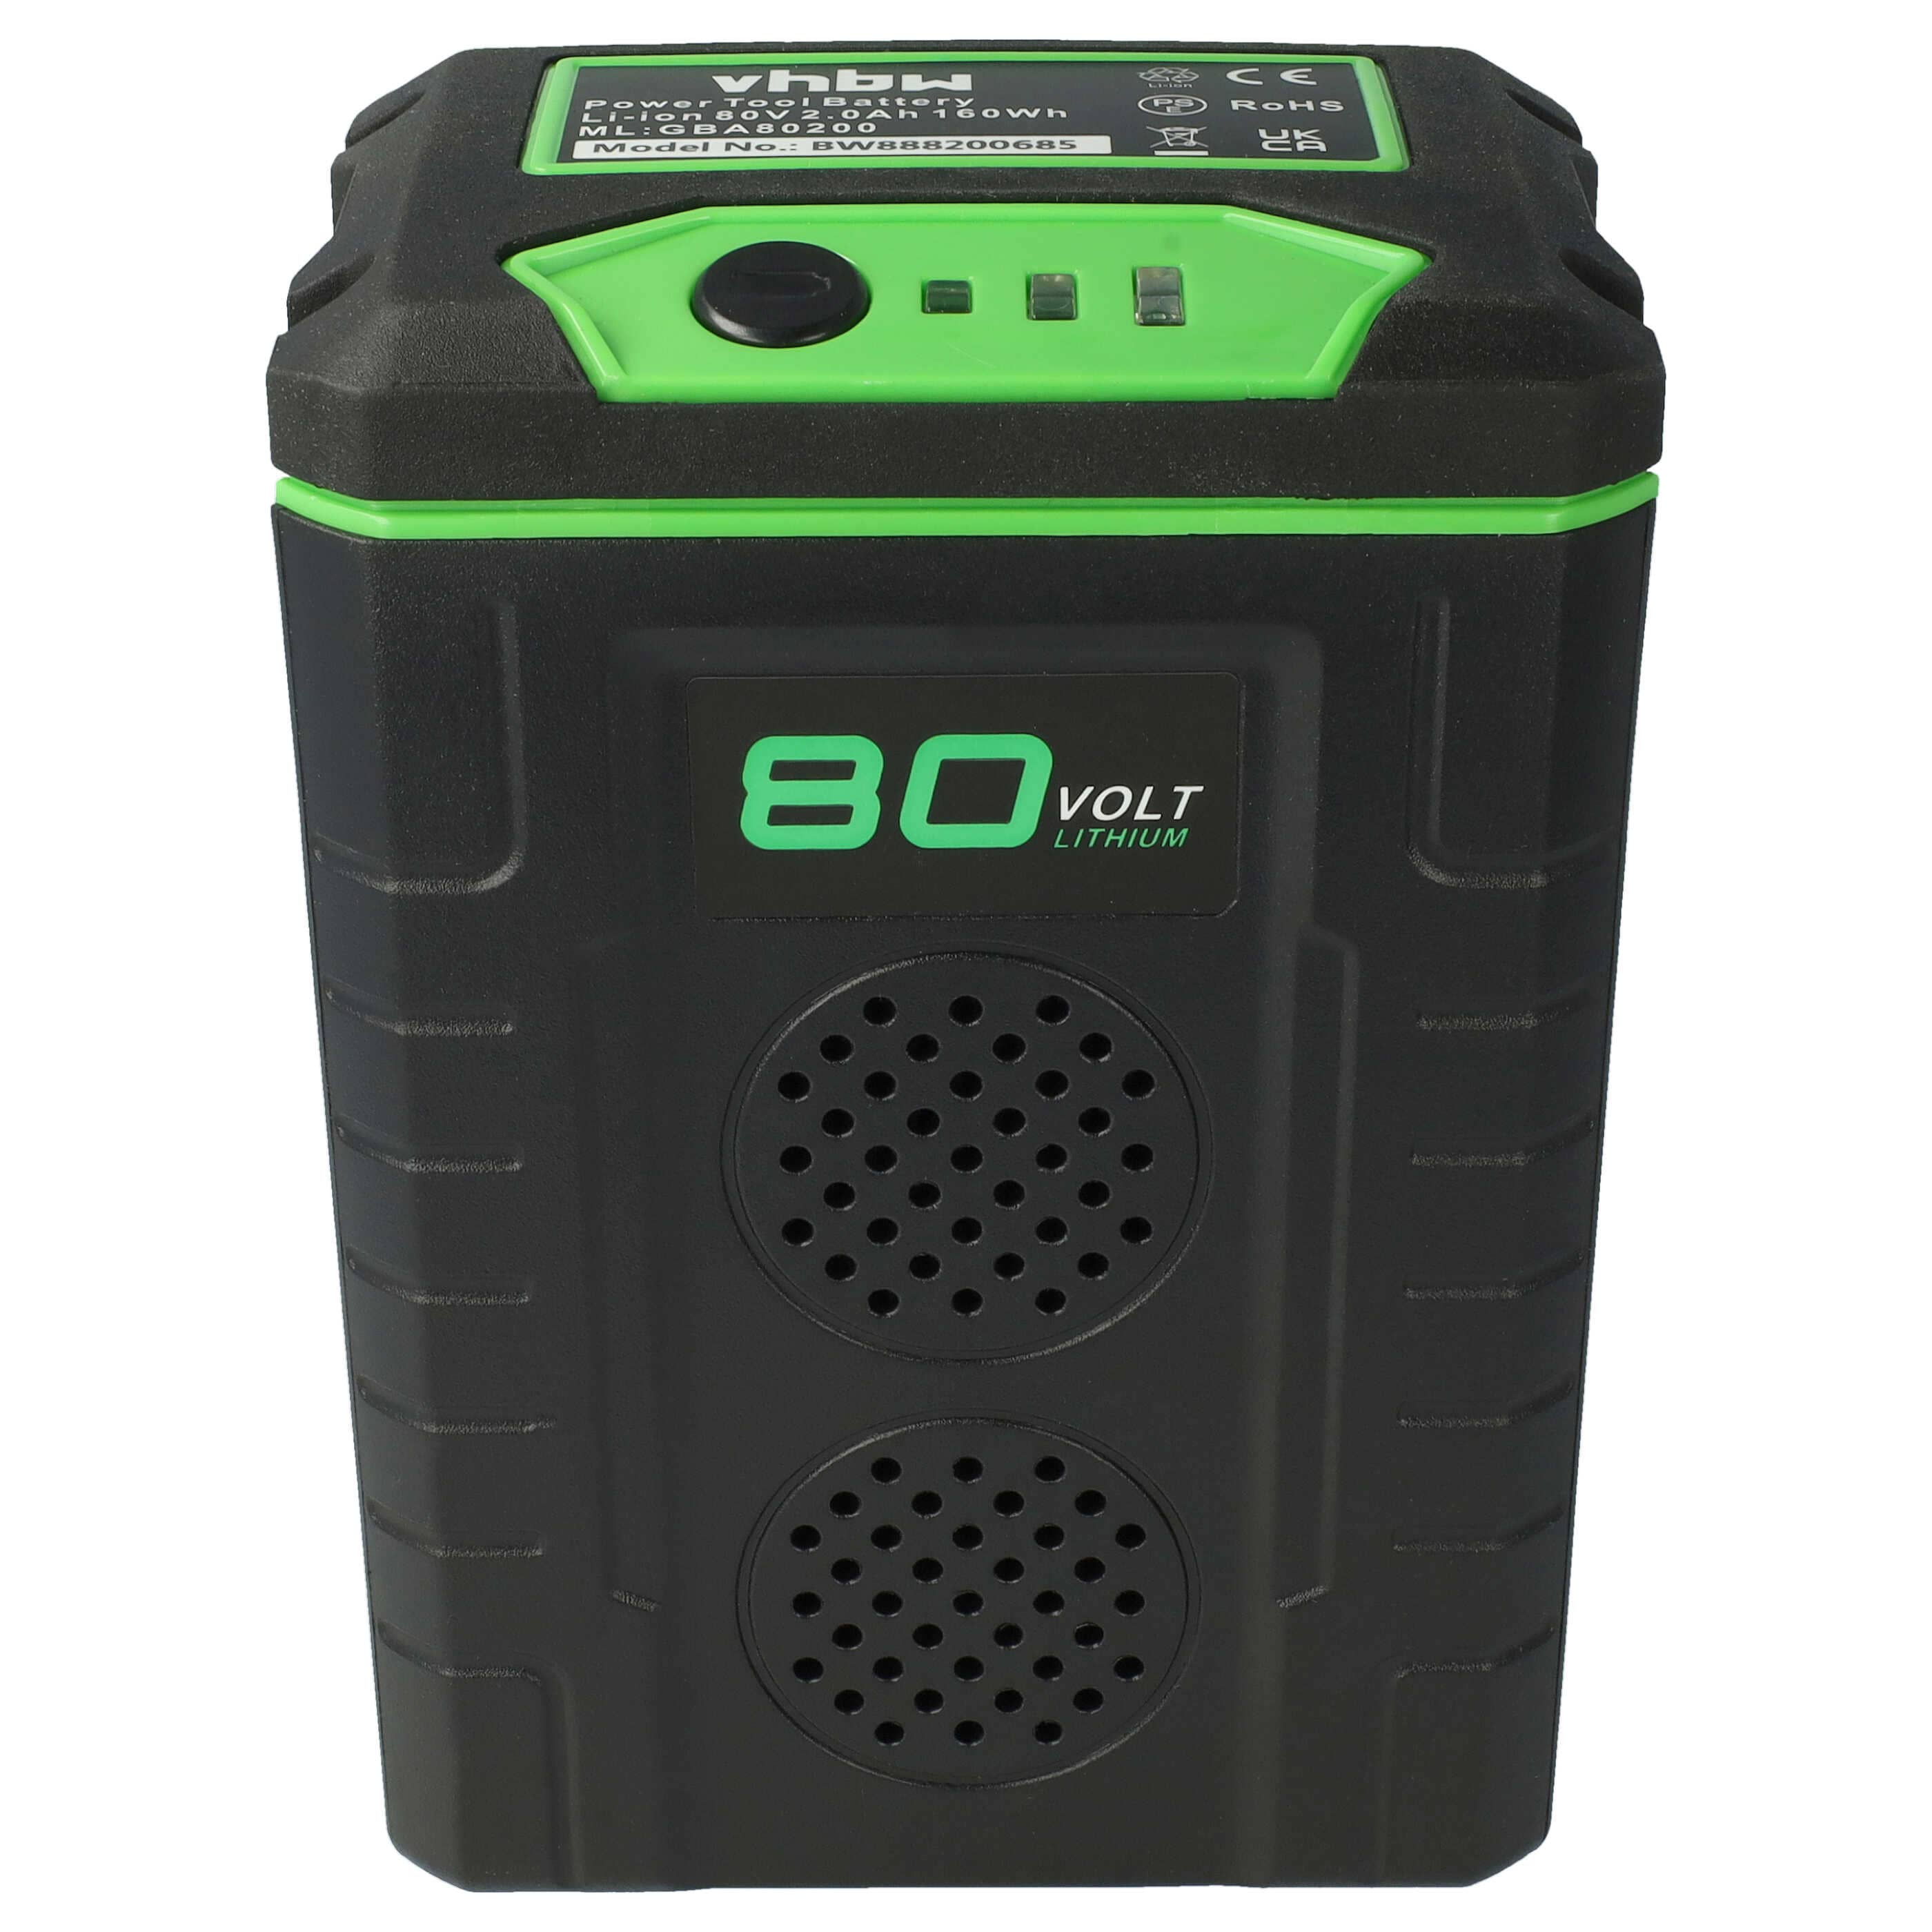 Batterie remplace Greenworks 2901307, GBA80200, G80B4, 2902407 pour outil de jardinage - 2000mAh 80V Li-ion